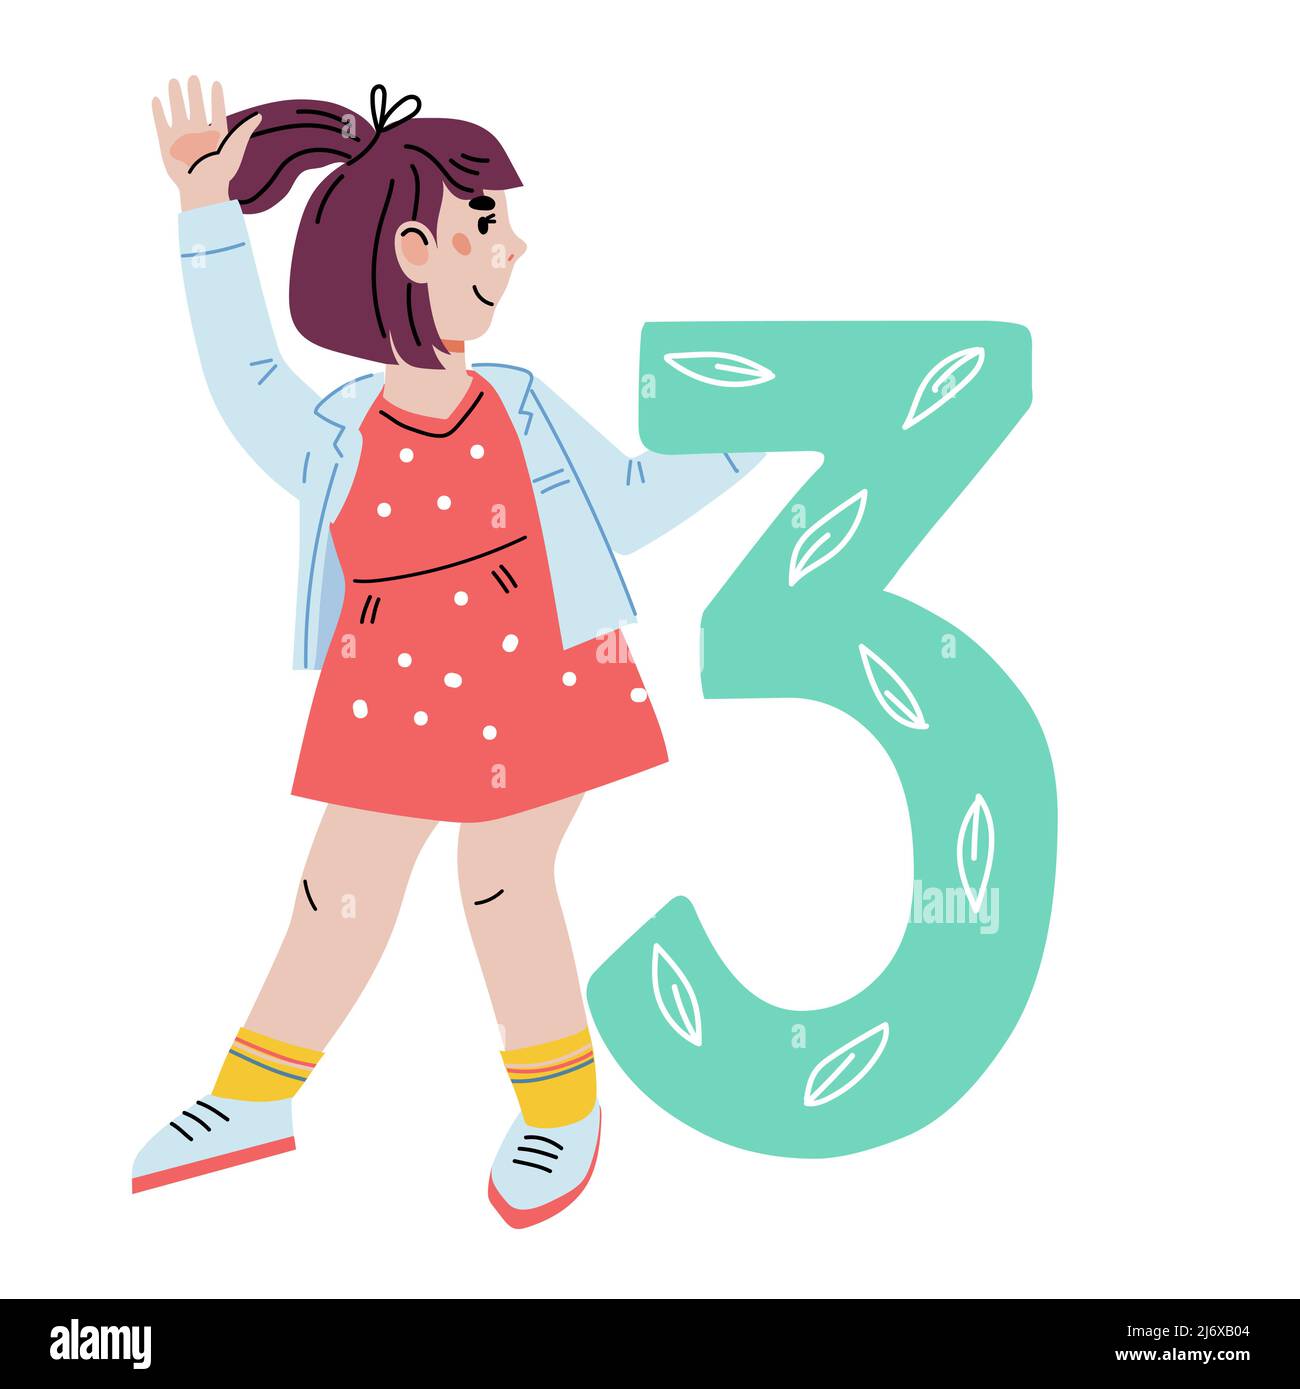 Kind Mädchen mit Figur 3 drei, Vektor-Cartoon flache Illustration auf Hintergrund isoliert. Anzahl der Kinder im Vorschulalter oder Kindergartenalter, Coun Stock Vektor